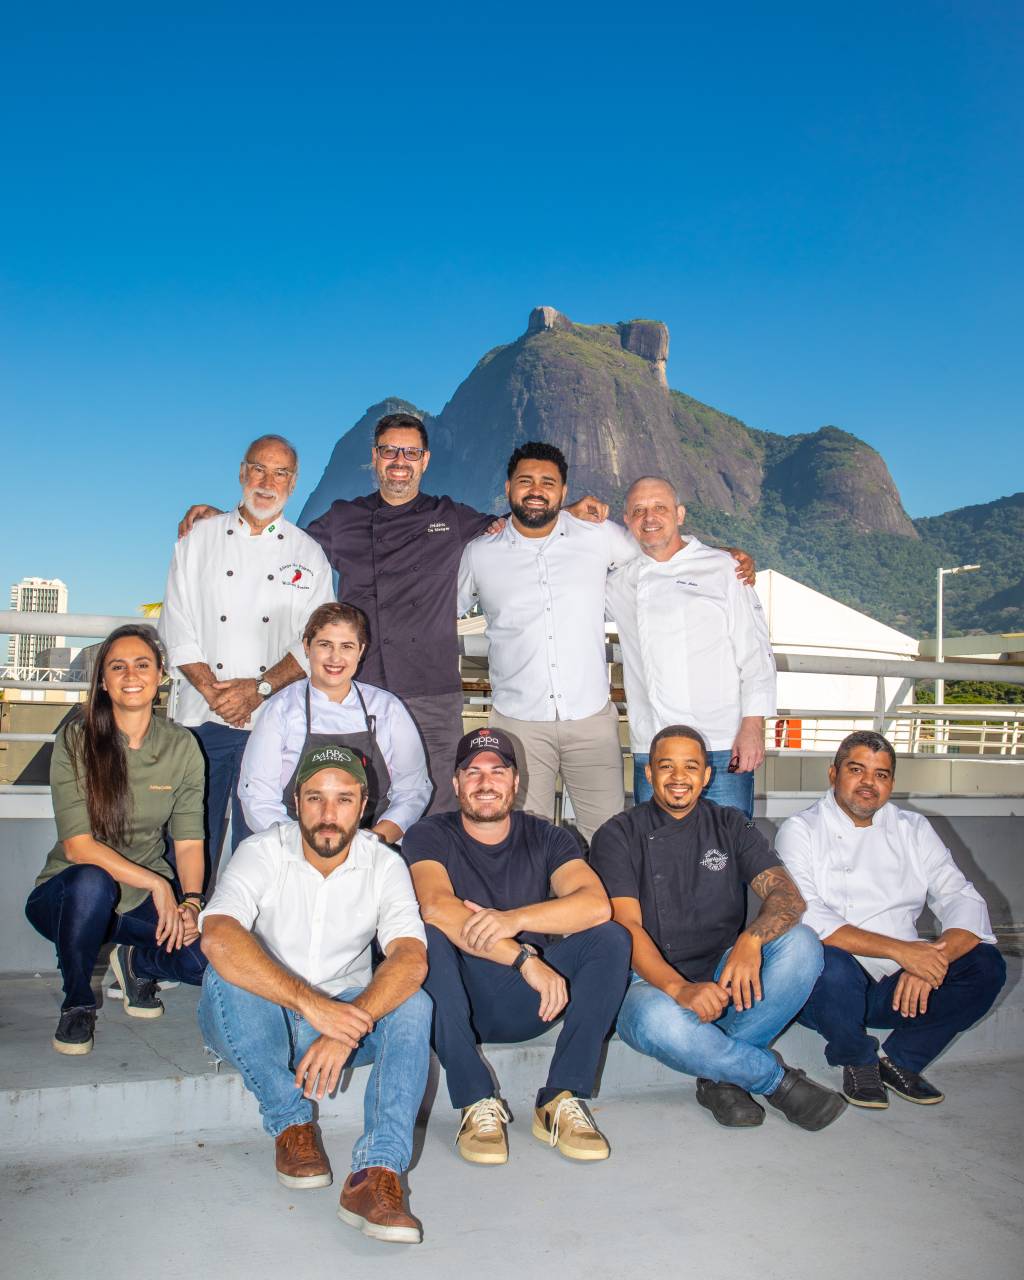 Foto mostra chefs de restaurantes posicionados juntos em terraço, com a Pedra da Gávea ao fundo